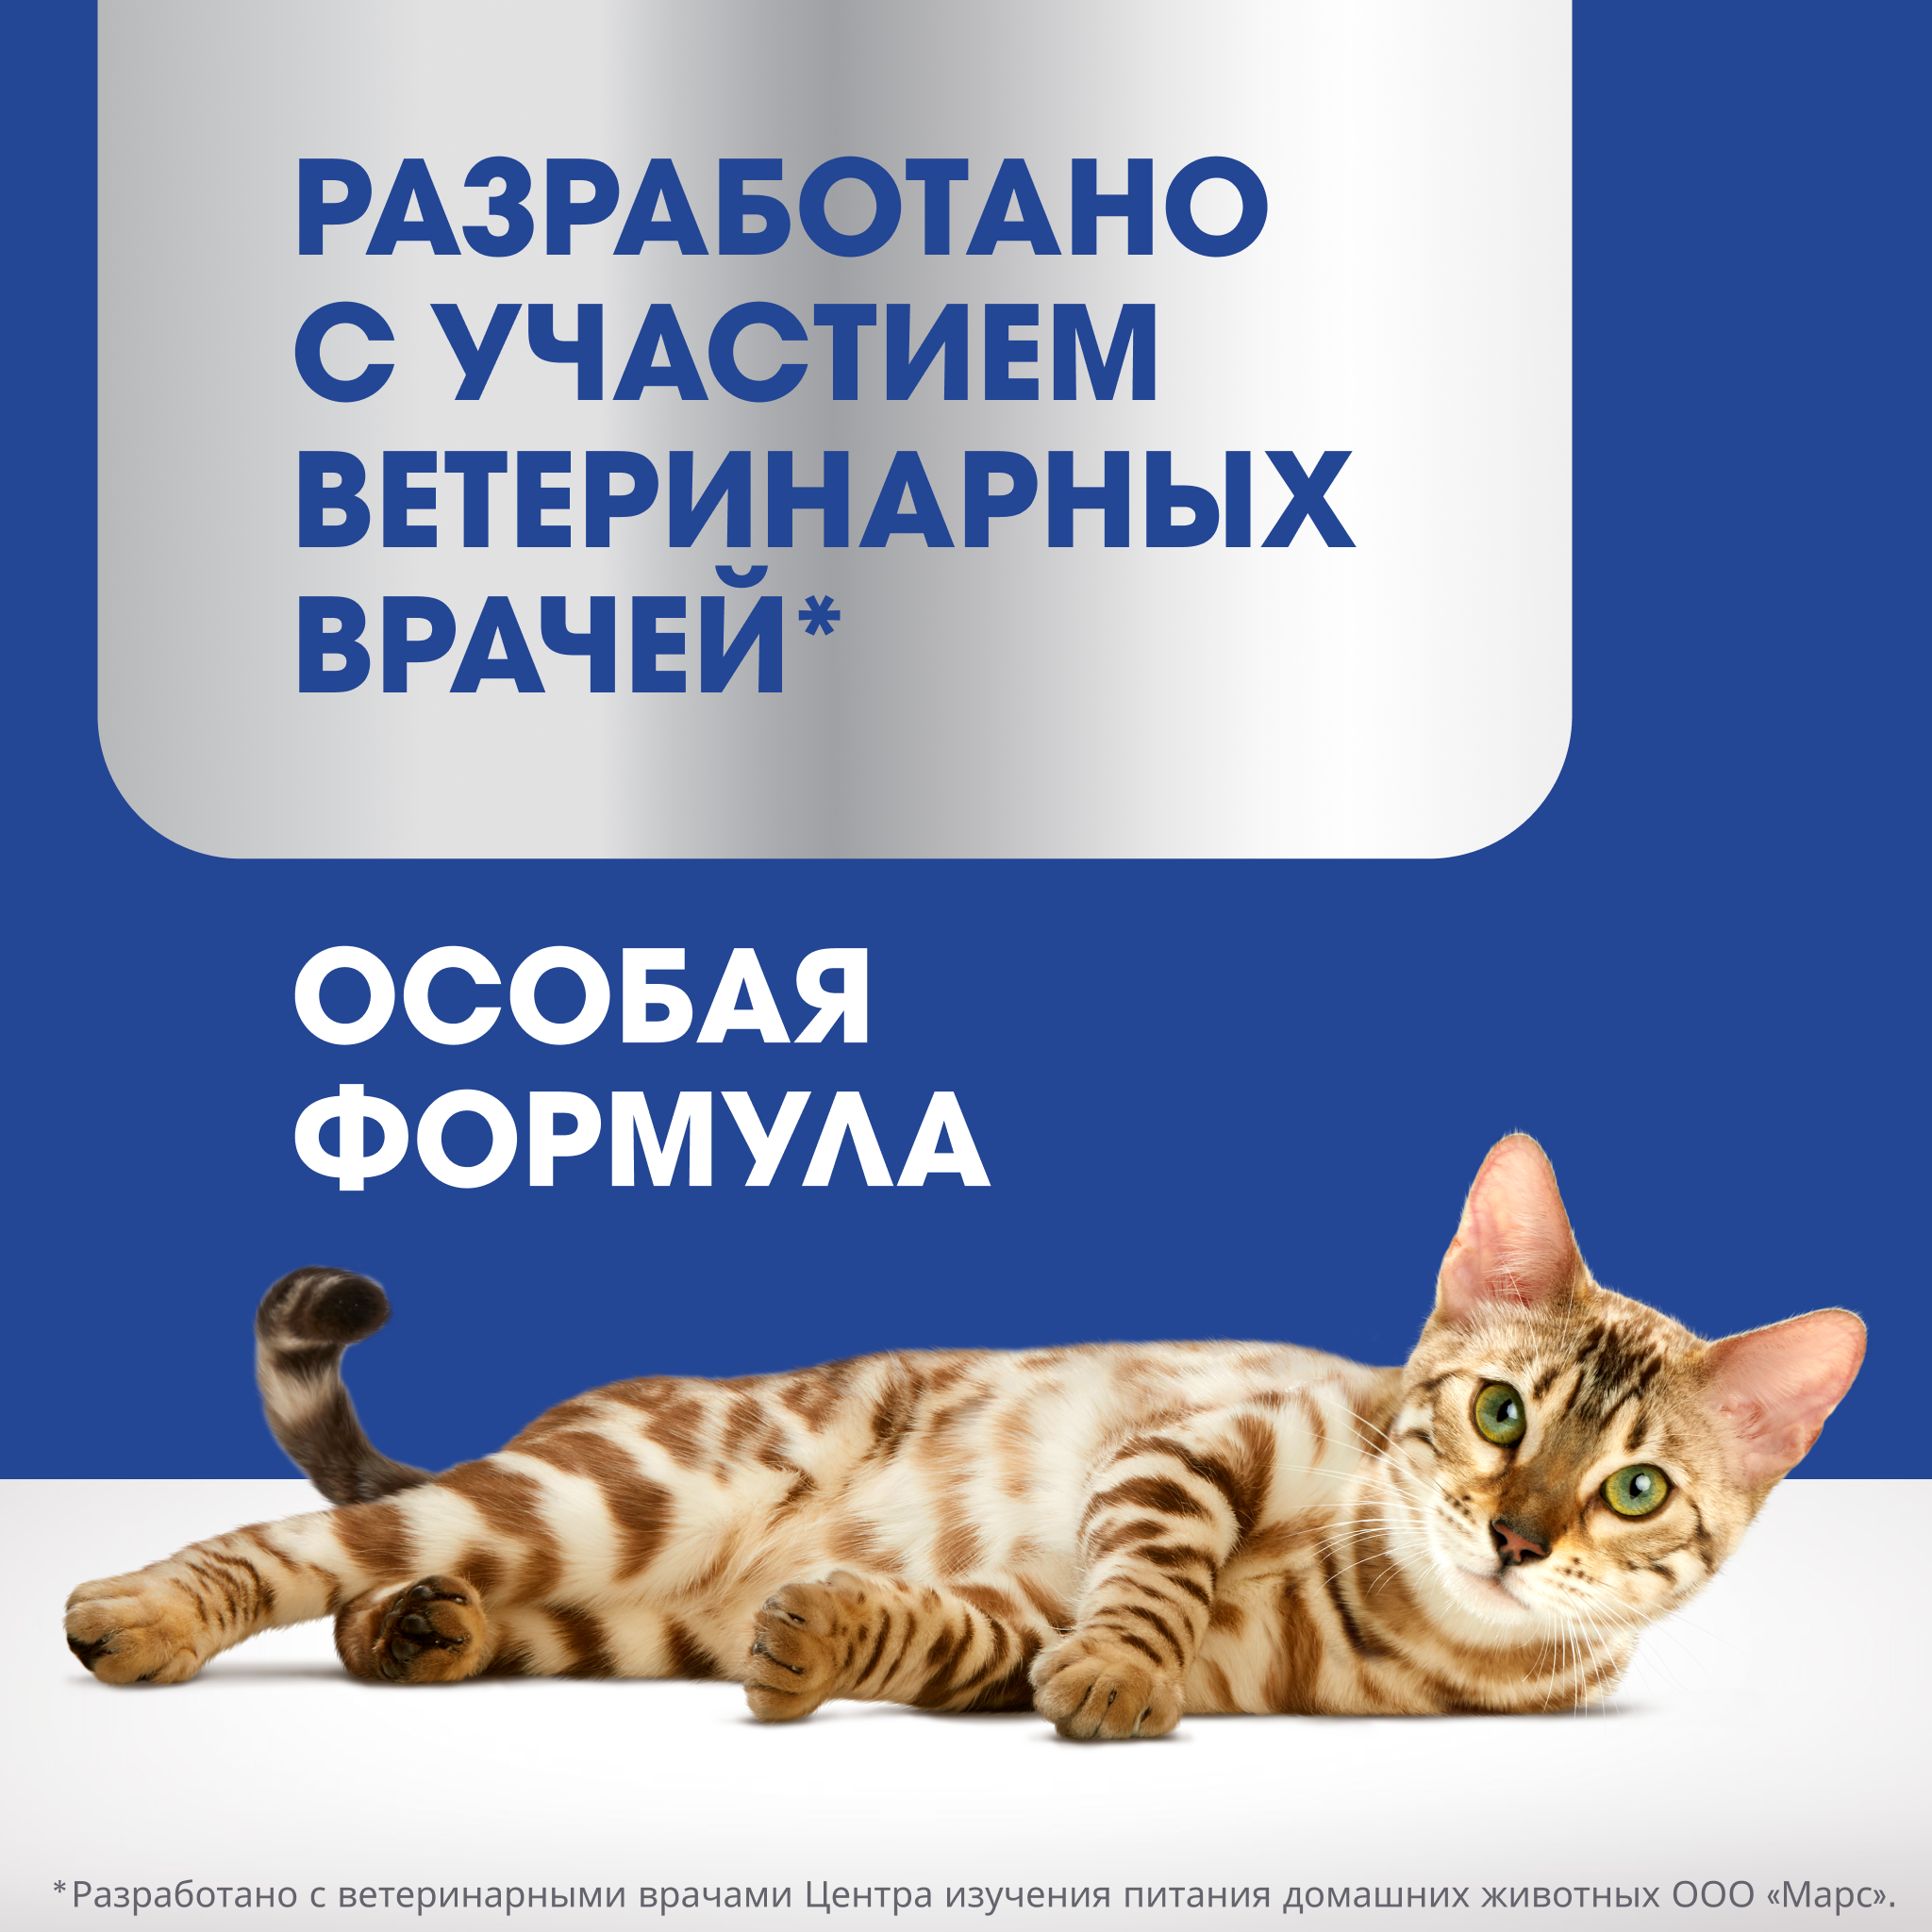 Лакомство для кошек PERFECT FIT IMMUNITY   «Для поддержания иммунитета» с курицей, 50г